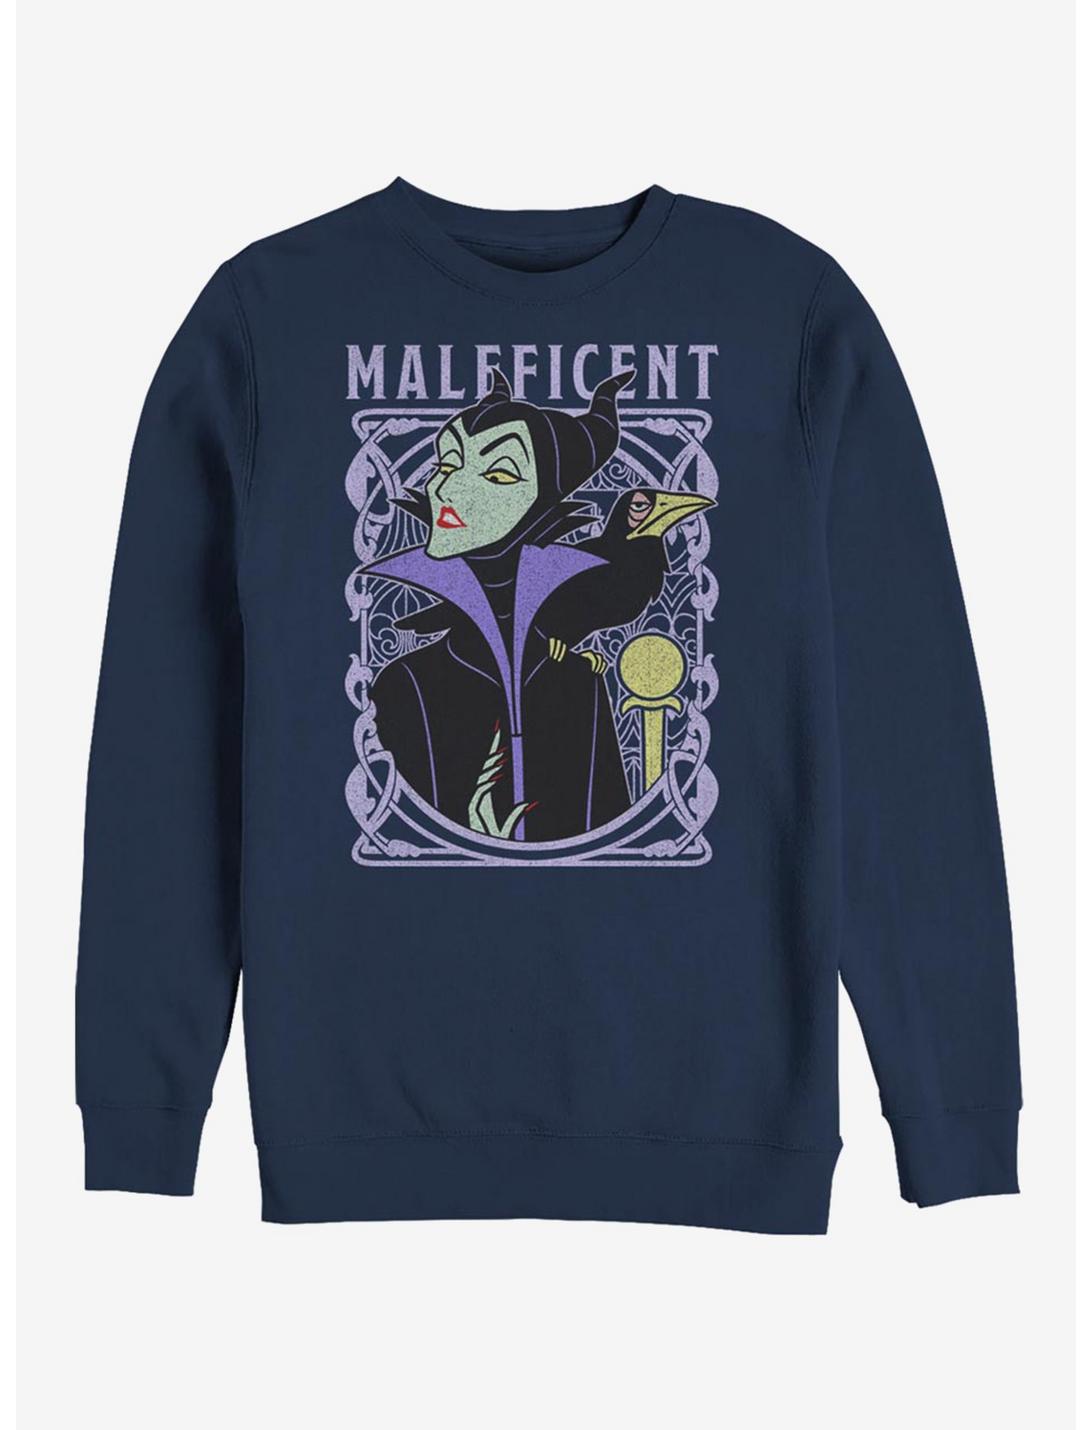 Disney Sleeping Beauty Maleficent Color Crew Sweatshirt, NAVY, hi-res